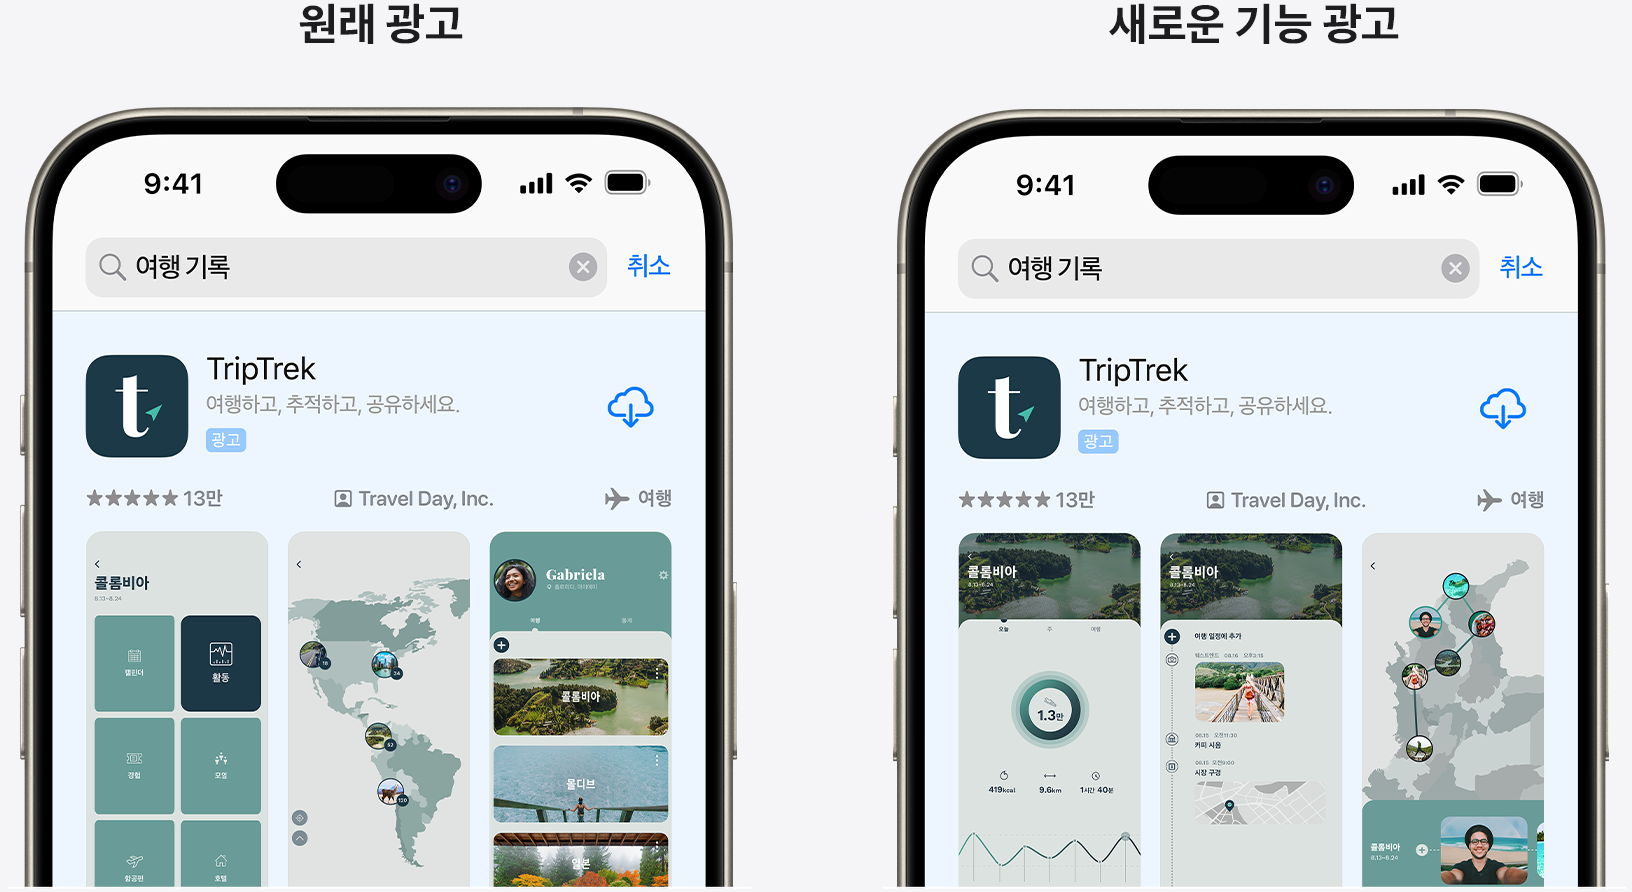 예제 앱 TripTrek에 대한 원래 광고와 새로운 기능을 강조하는 광고를 나란히 놓고 비교합니다.